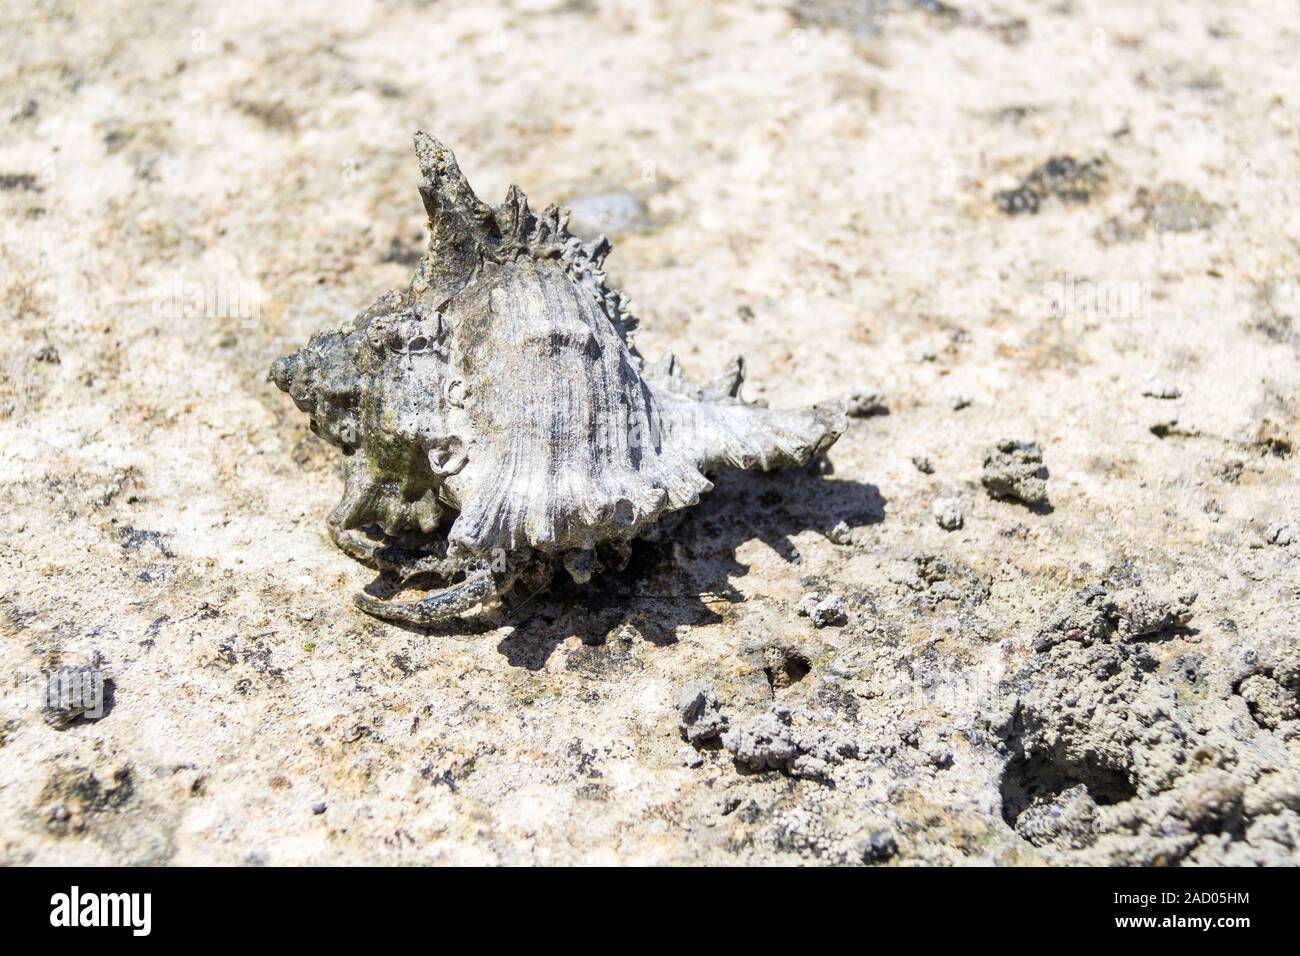 Hermit crab with big shell walking on muddy ground, coast of Zanzibar Stock Photo